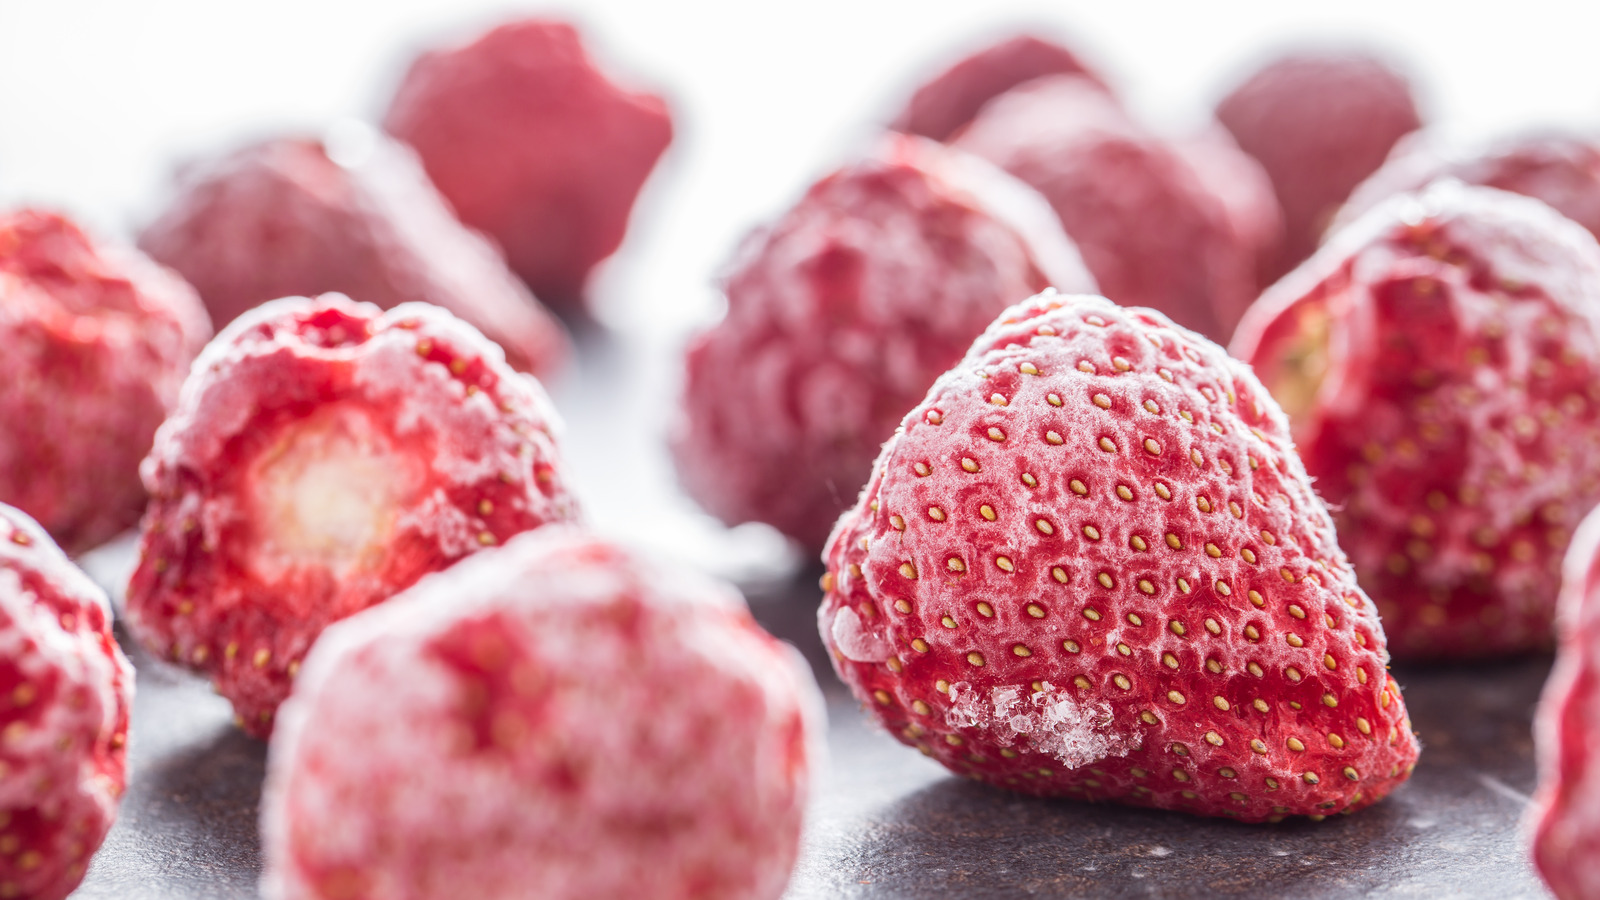 Costco Recalls Frozen Strawberries Over Hepatitis A Concerns